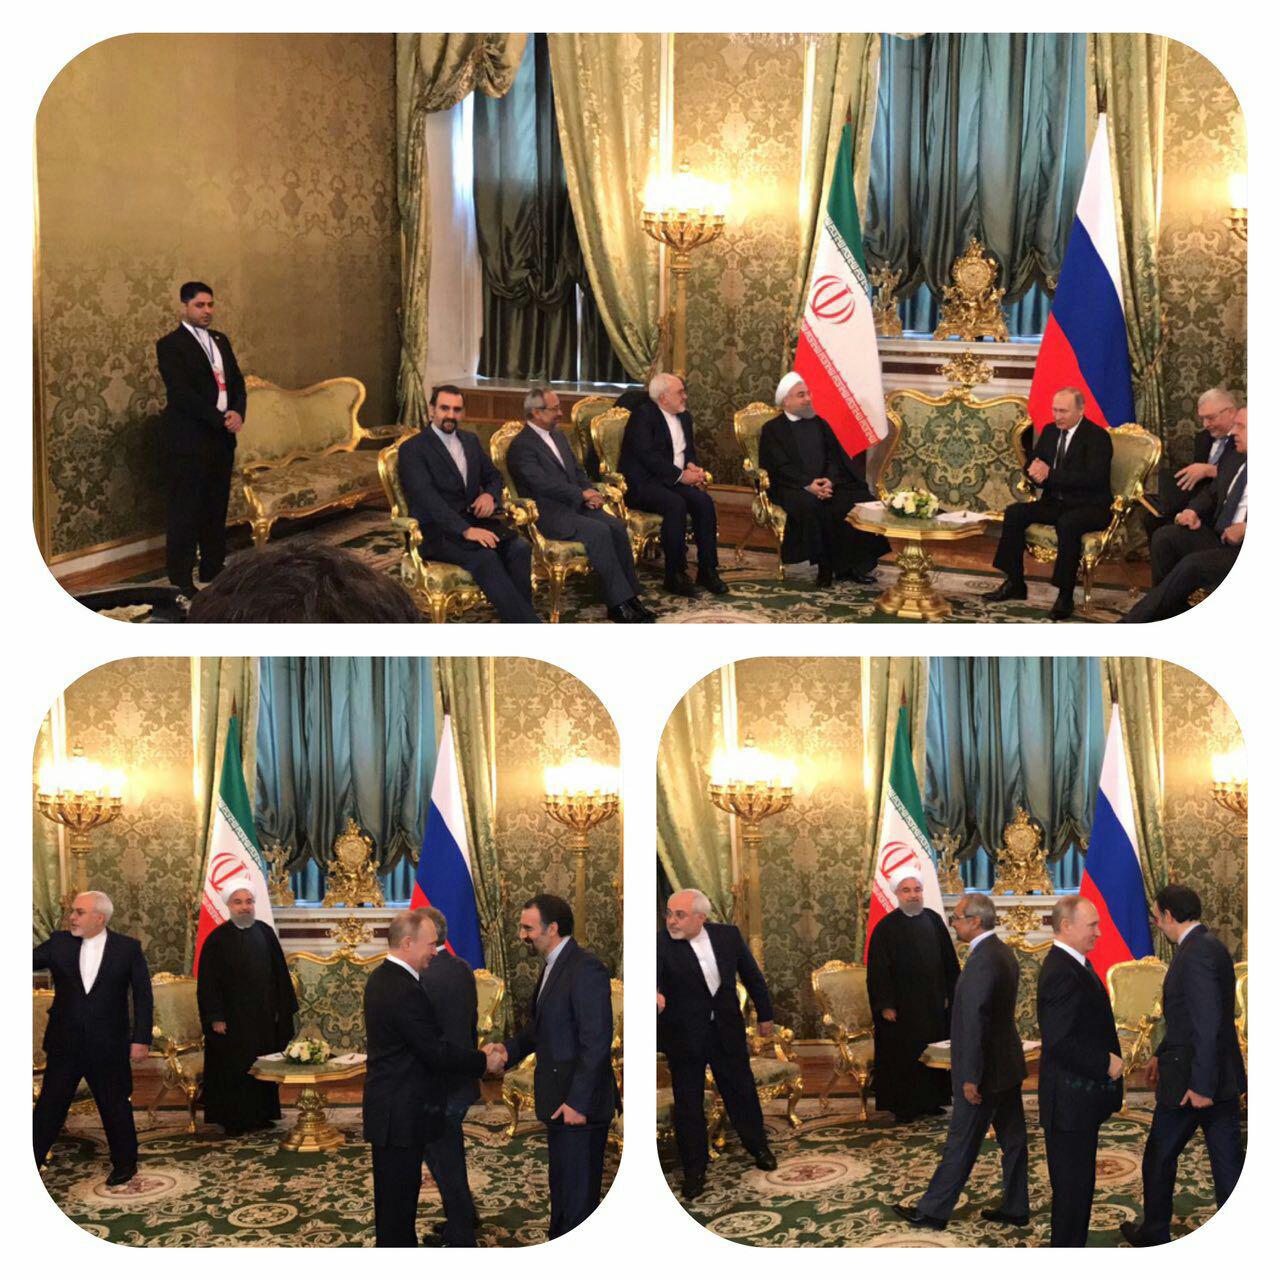 عکس/ملاقات پوتین و رئیس جمهور در کاخ كرملين مسکو